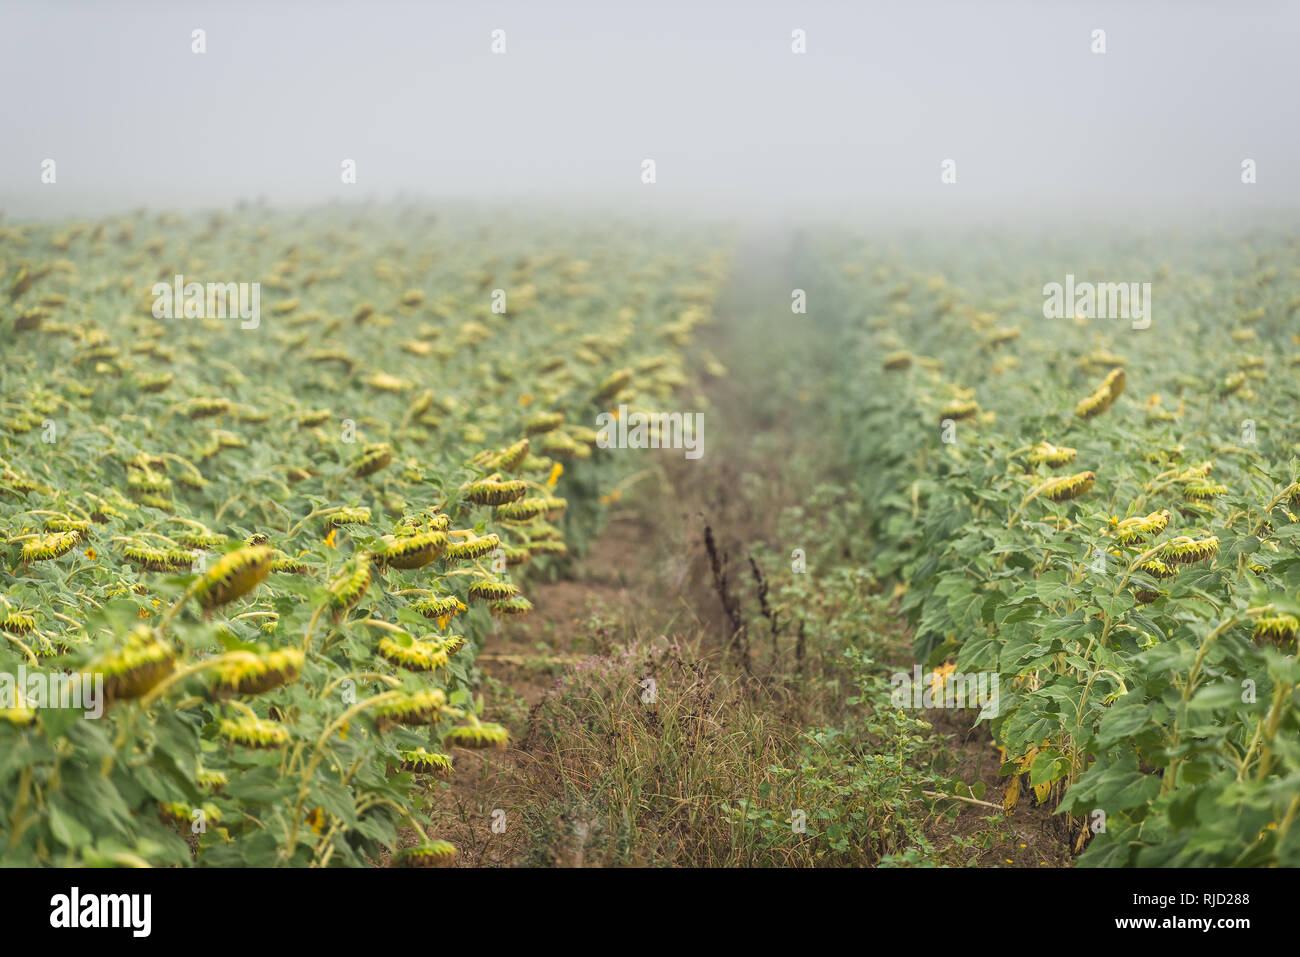 Viele blütenkorbes Blume reif für die Ernte in der Landwirtschaft Bauernhof Feld am Morgen Nebel Nebel Wetter Stockfoto